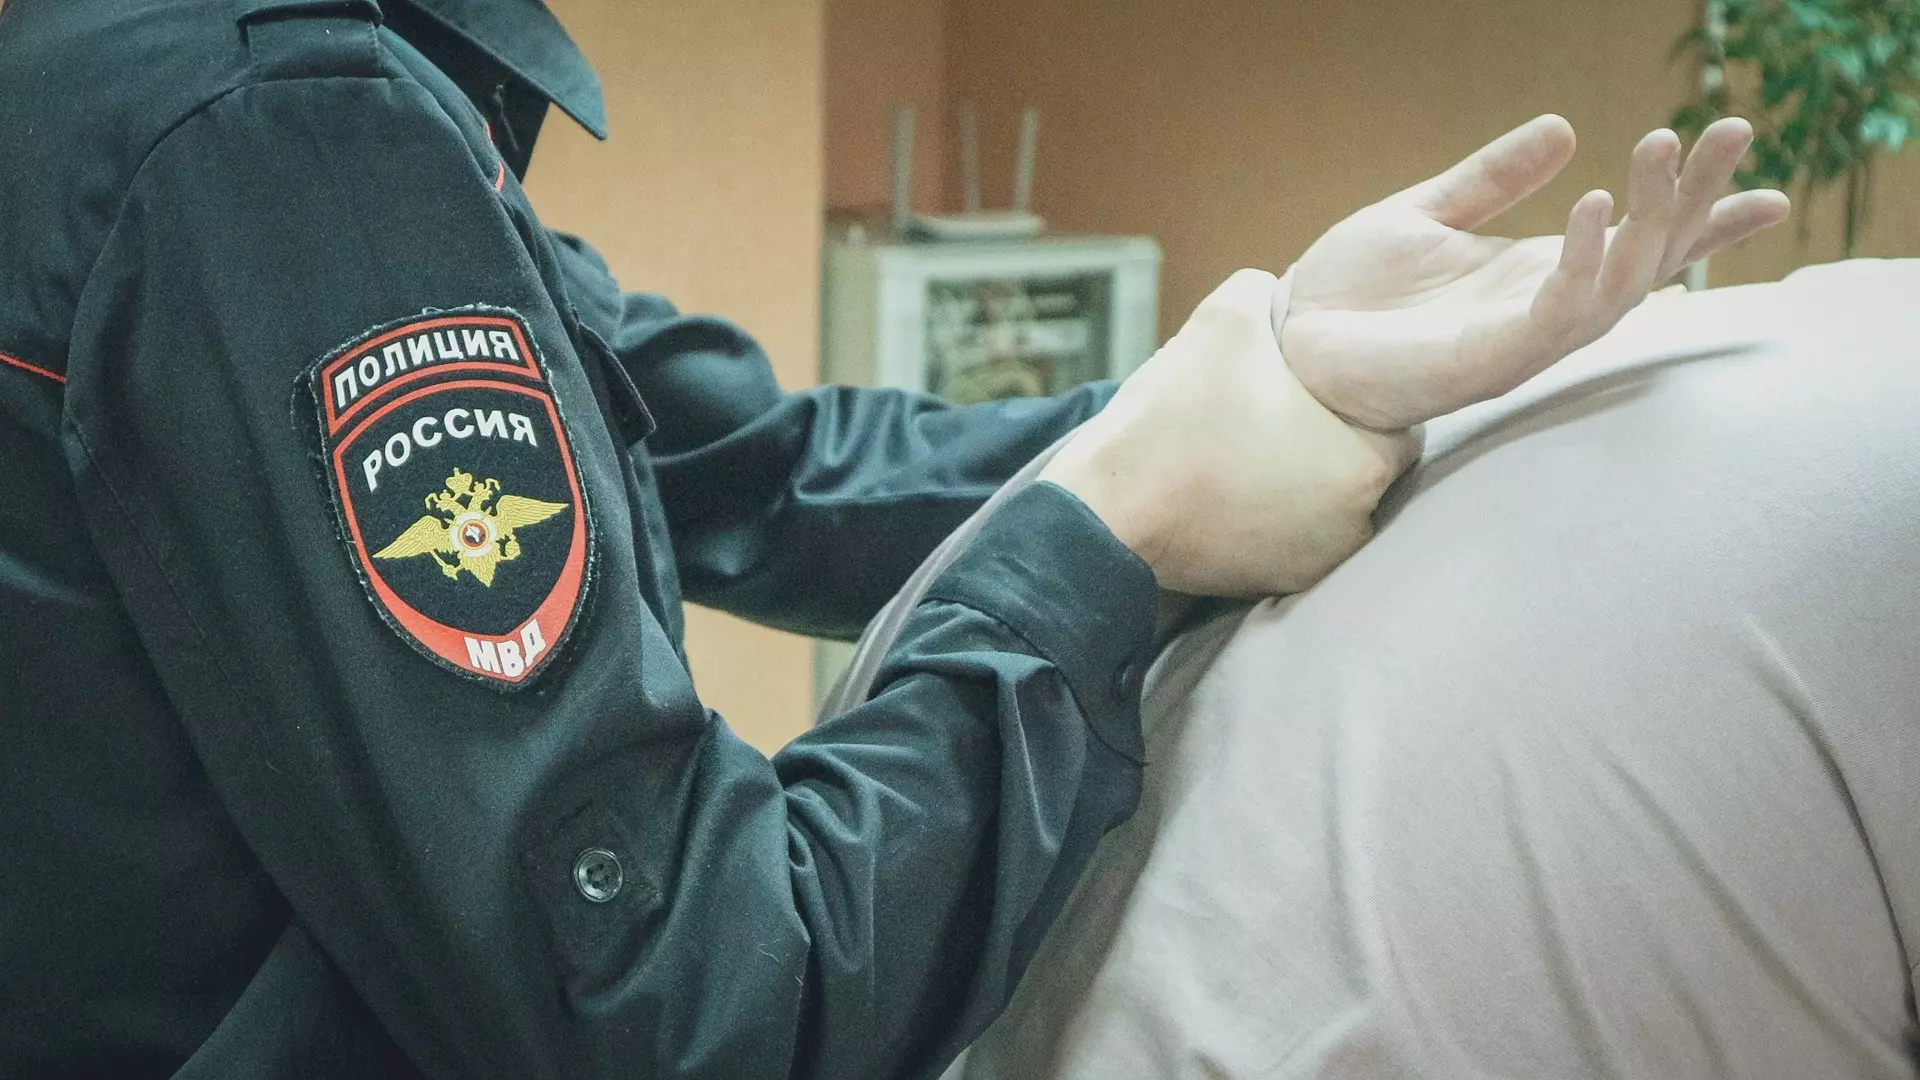 Юрист администрации Первомайска ложно обвинил полицейских в пытках